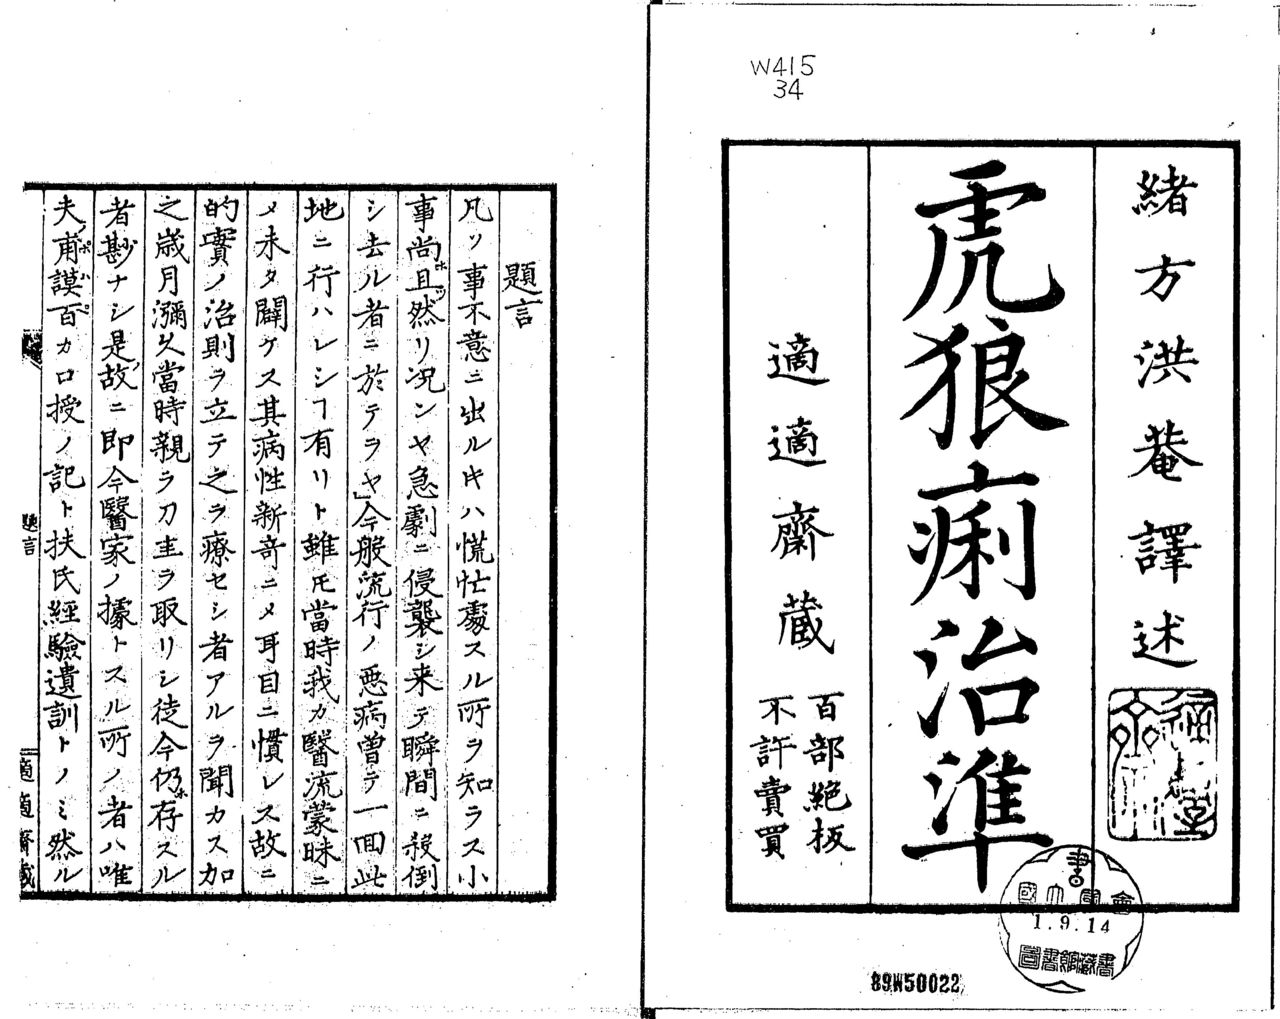 Korori chijun, manual de tratamiento del cólera escrito por el médico e intelectual Ogata Kōan, que se basó en tres trabajos científicos occidentales. Colección de la Biblioteca Nacional de la Dieta.